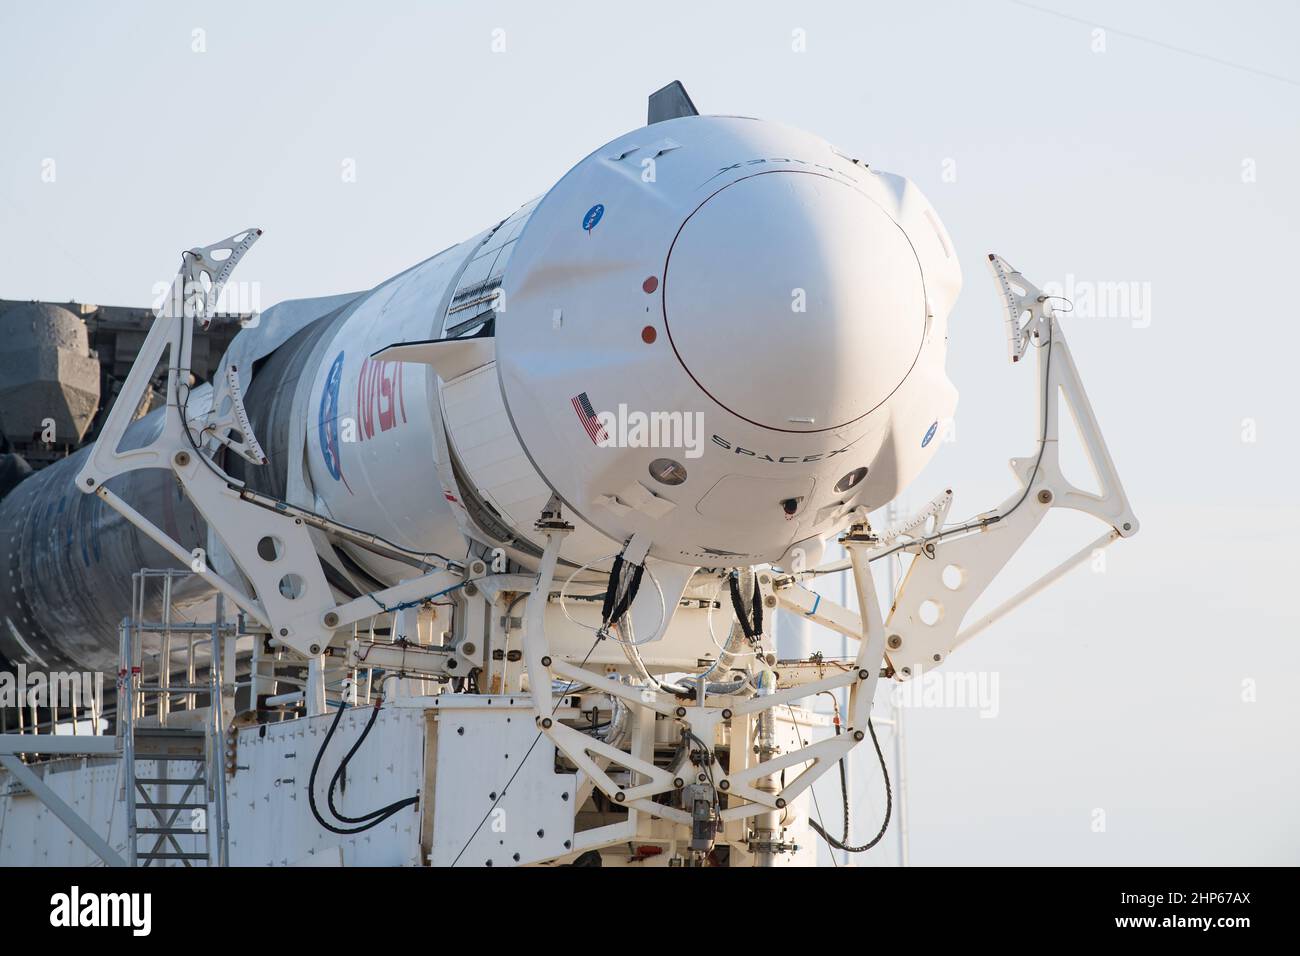 Un cohete SpaceX Falcon 9 con la nave espacial Crew Dragon de la compañía a bordo se ve como se enrolla para lanzar el Complejo 39A mientras continúan los preparativos para la misión Crew-2, el viernes 16 de abril de 2021, en el Centro Espacial Kennedy de la NASA en Florida. La misión SpaceX Crew-2 de la NASA es la segunda misión de rotación de la tripulación de la nave espacial SpaceX Crew Dragon y del cohete Falcon 9 a la Estación Espacial Internacional como parte del Programa de Crew Comercial de la agencia Foto de stock